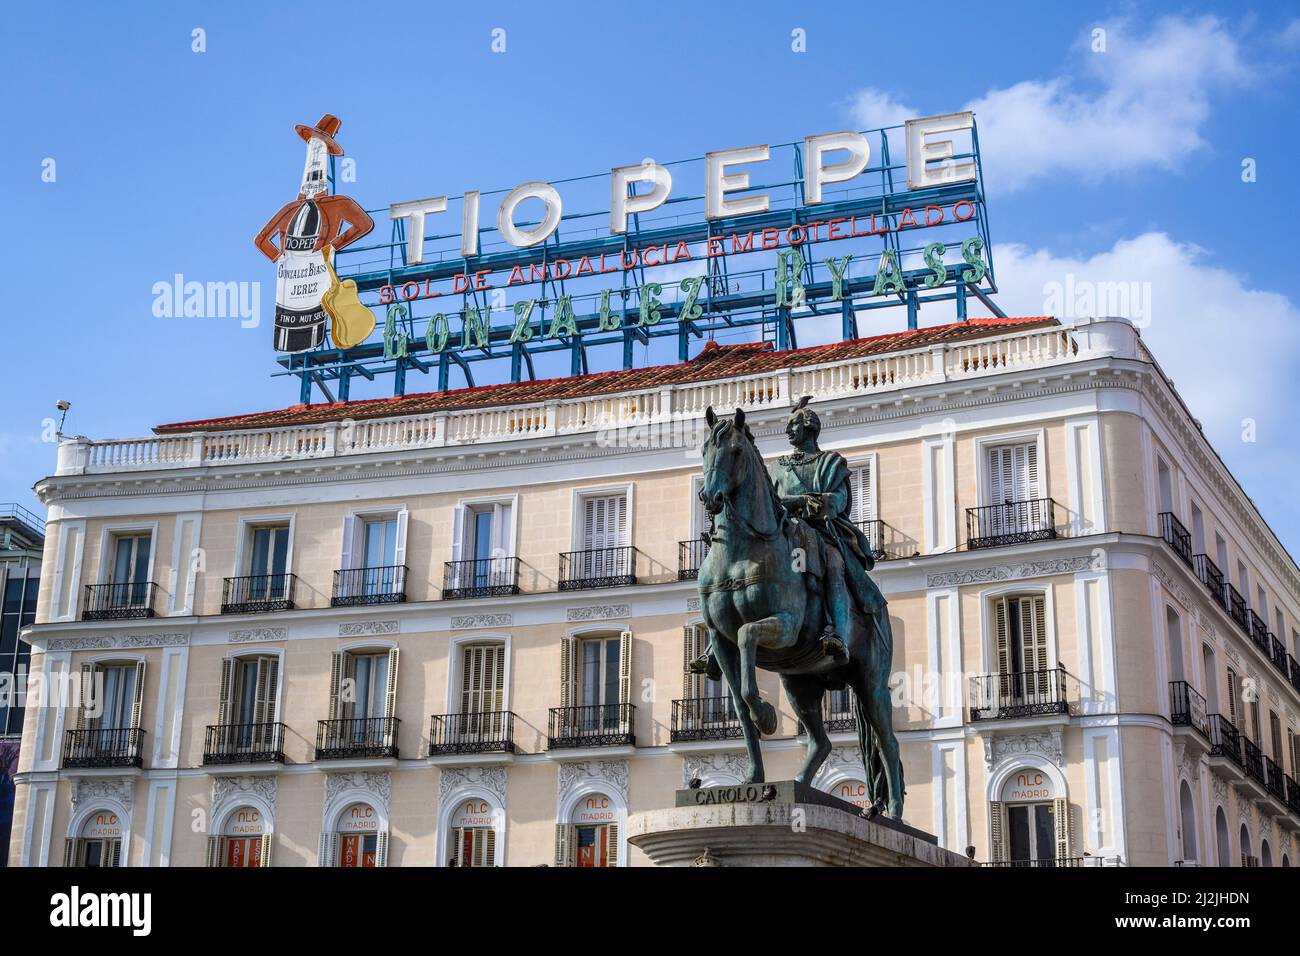 Statua di Carlos III e cartello al neon Tio Pepe a Madrid Centro, Spagna. Foto Stock